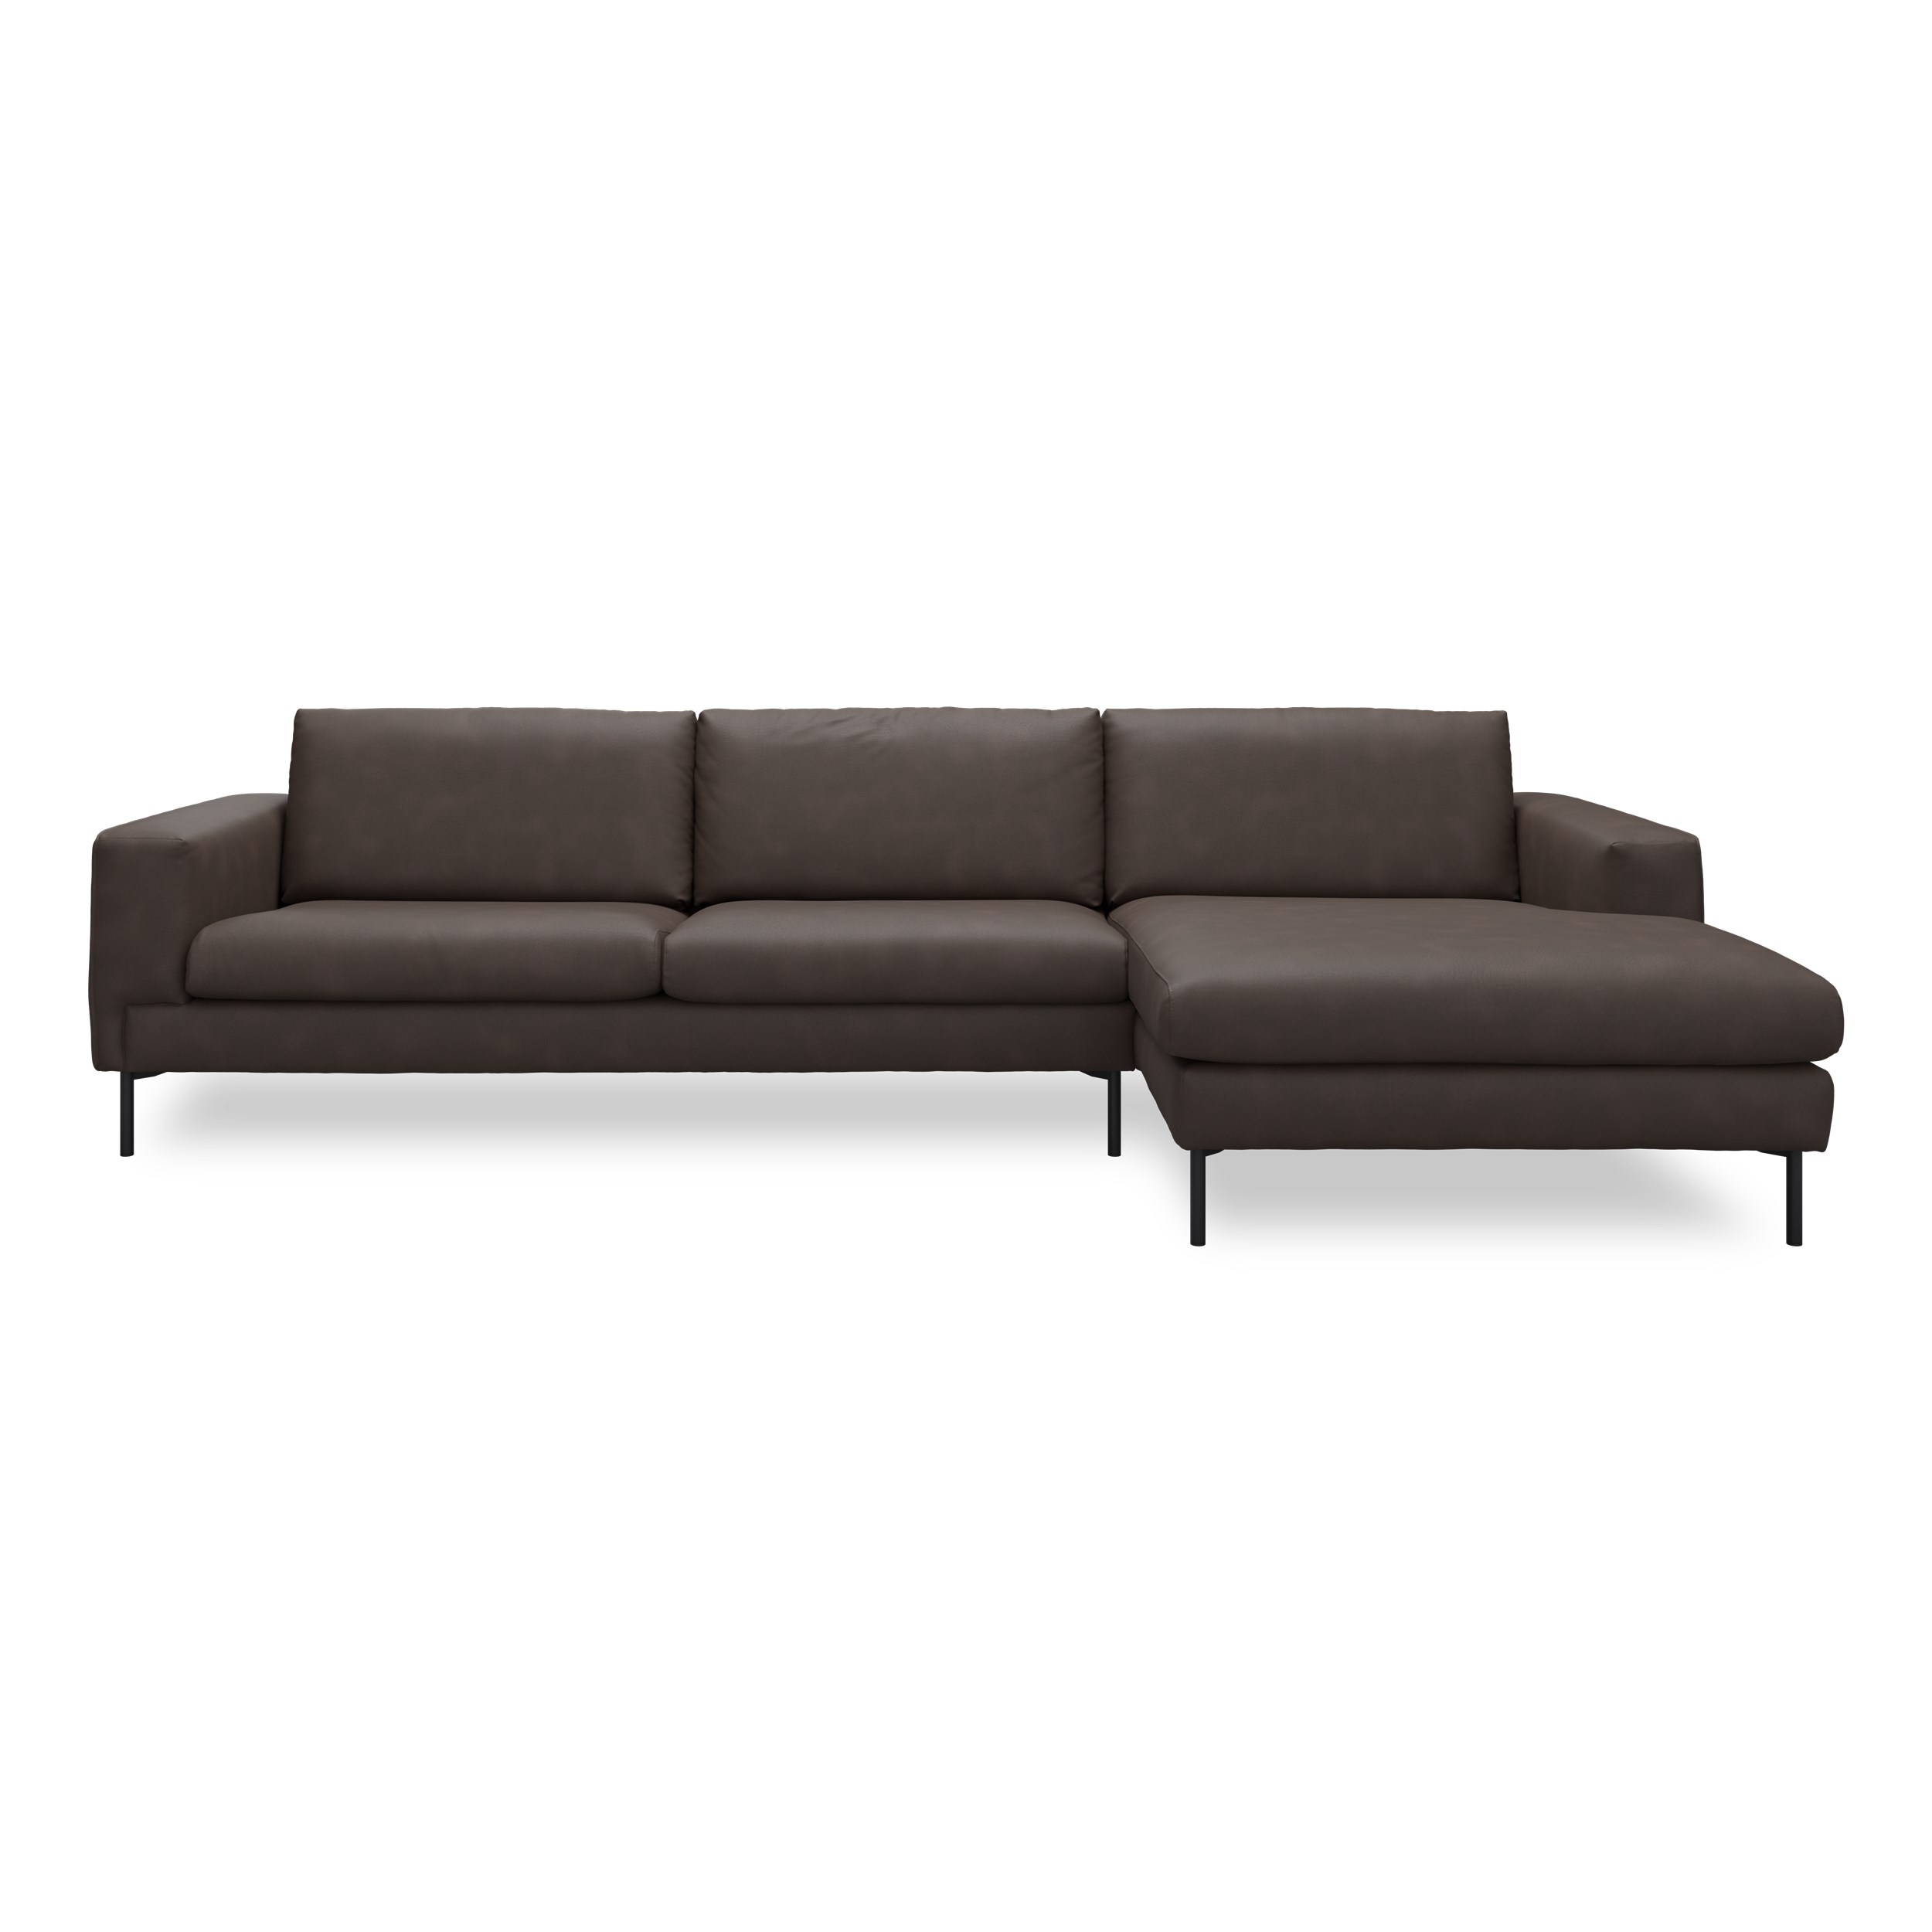 Nyland højrevendt sofa med chaiselong - Kentucky 1 earth bonded læder, Ben no. 145 i sortlakeret metal og S: Pocketfjedre/koldskum R: Koldskum med fiberfyld